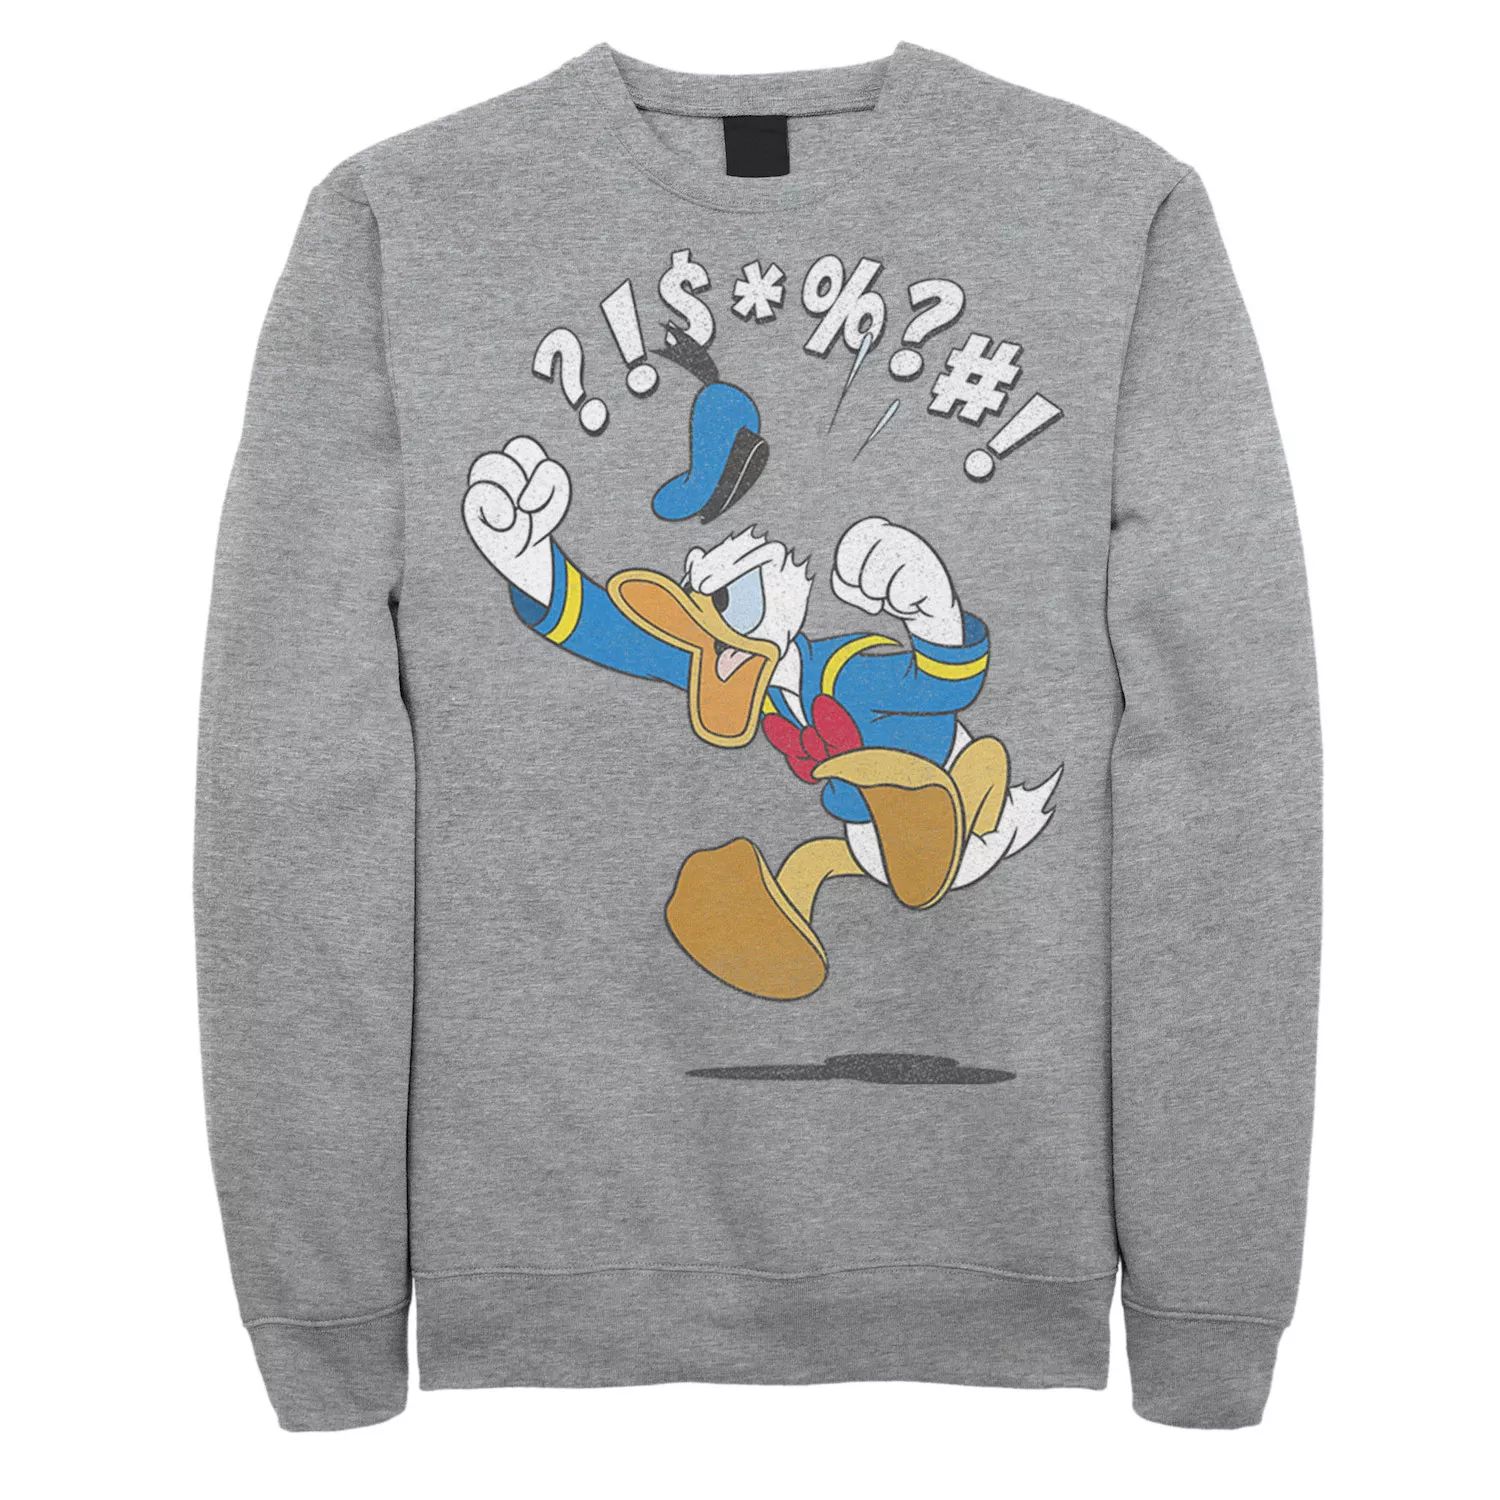 Мужской свитшот Disney Mickey & Friends Donald Duck Angry Jump